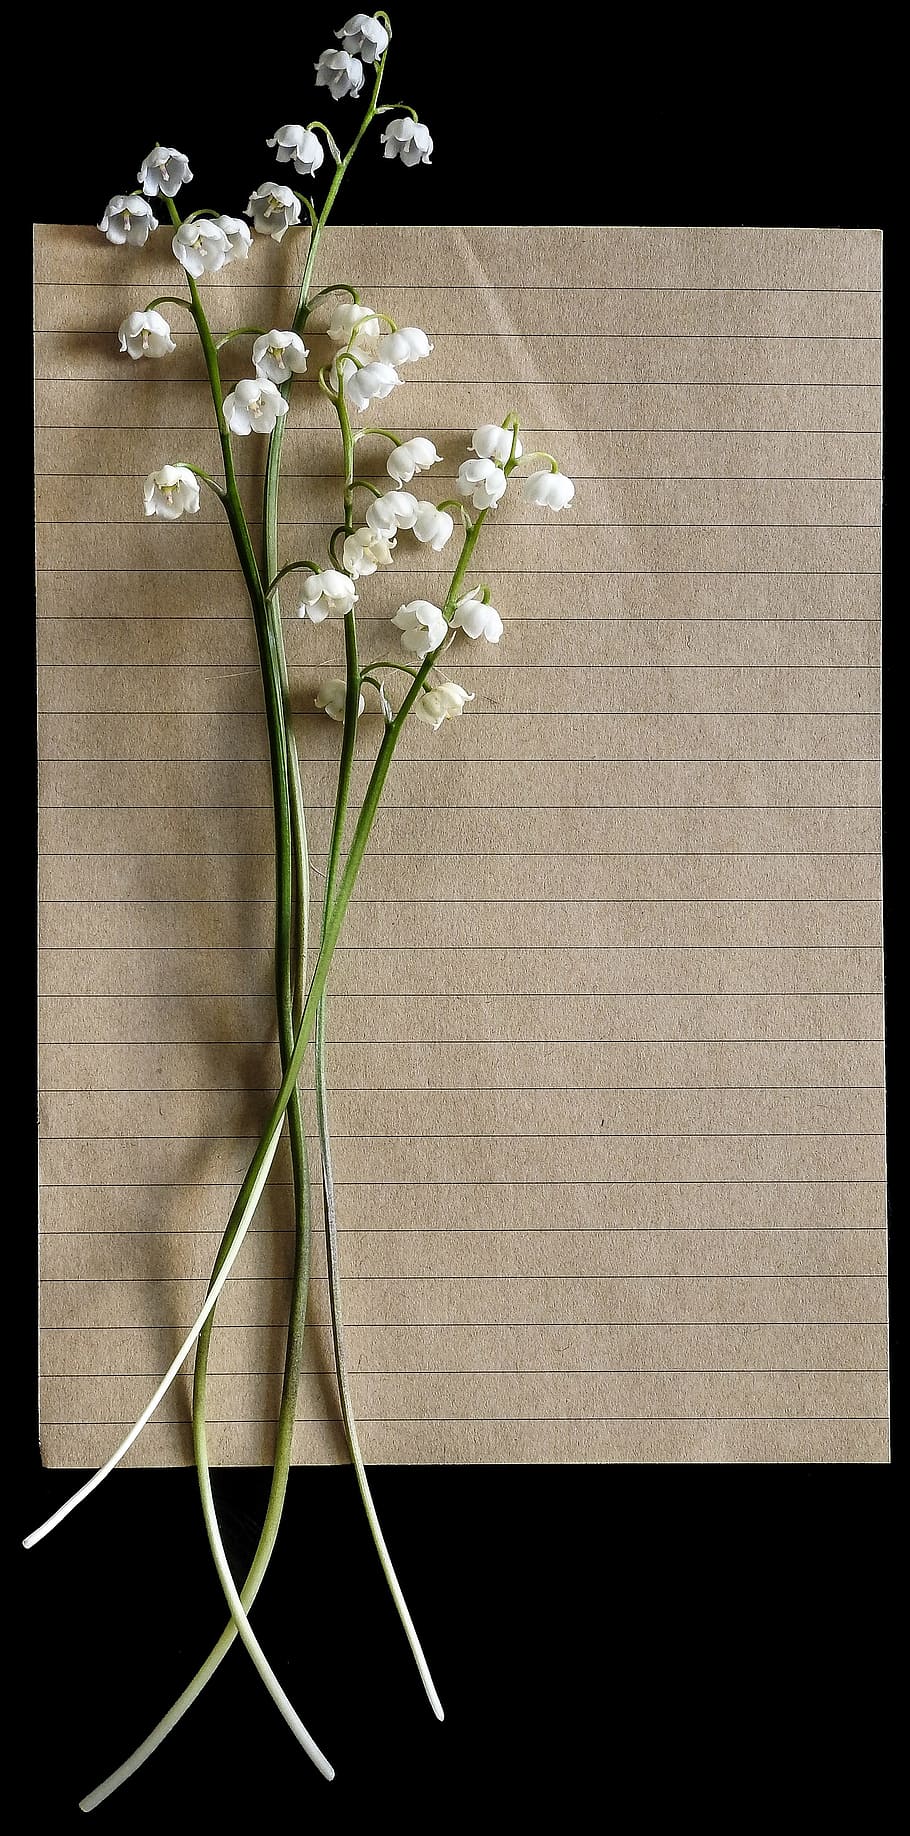 flores de pétalos blancos, lirios del valle, vintage, carta, papel, rústico, floral, retro, fondo, telón de fondo